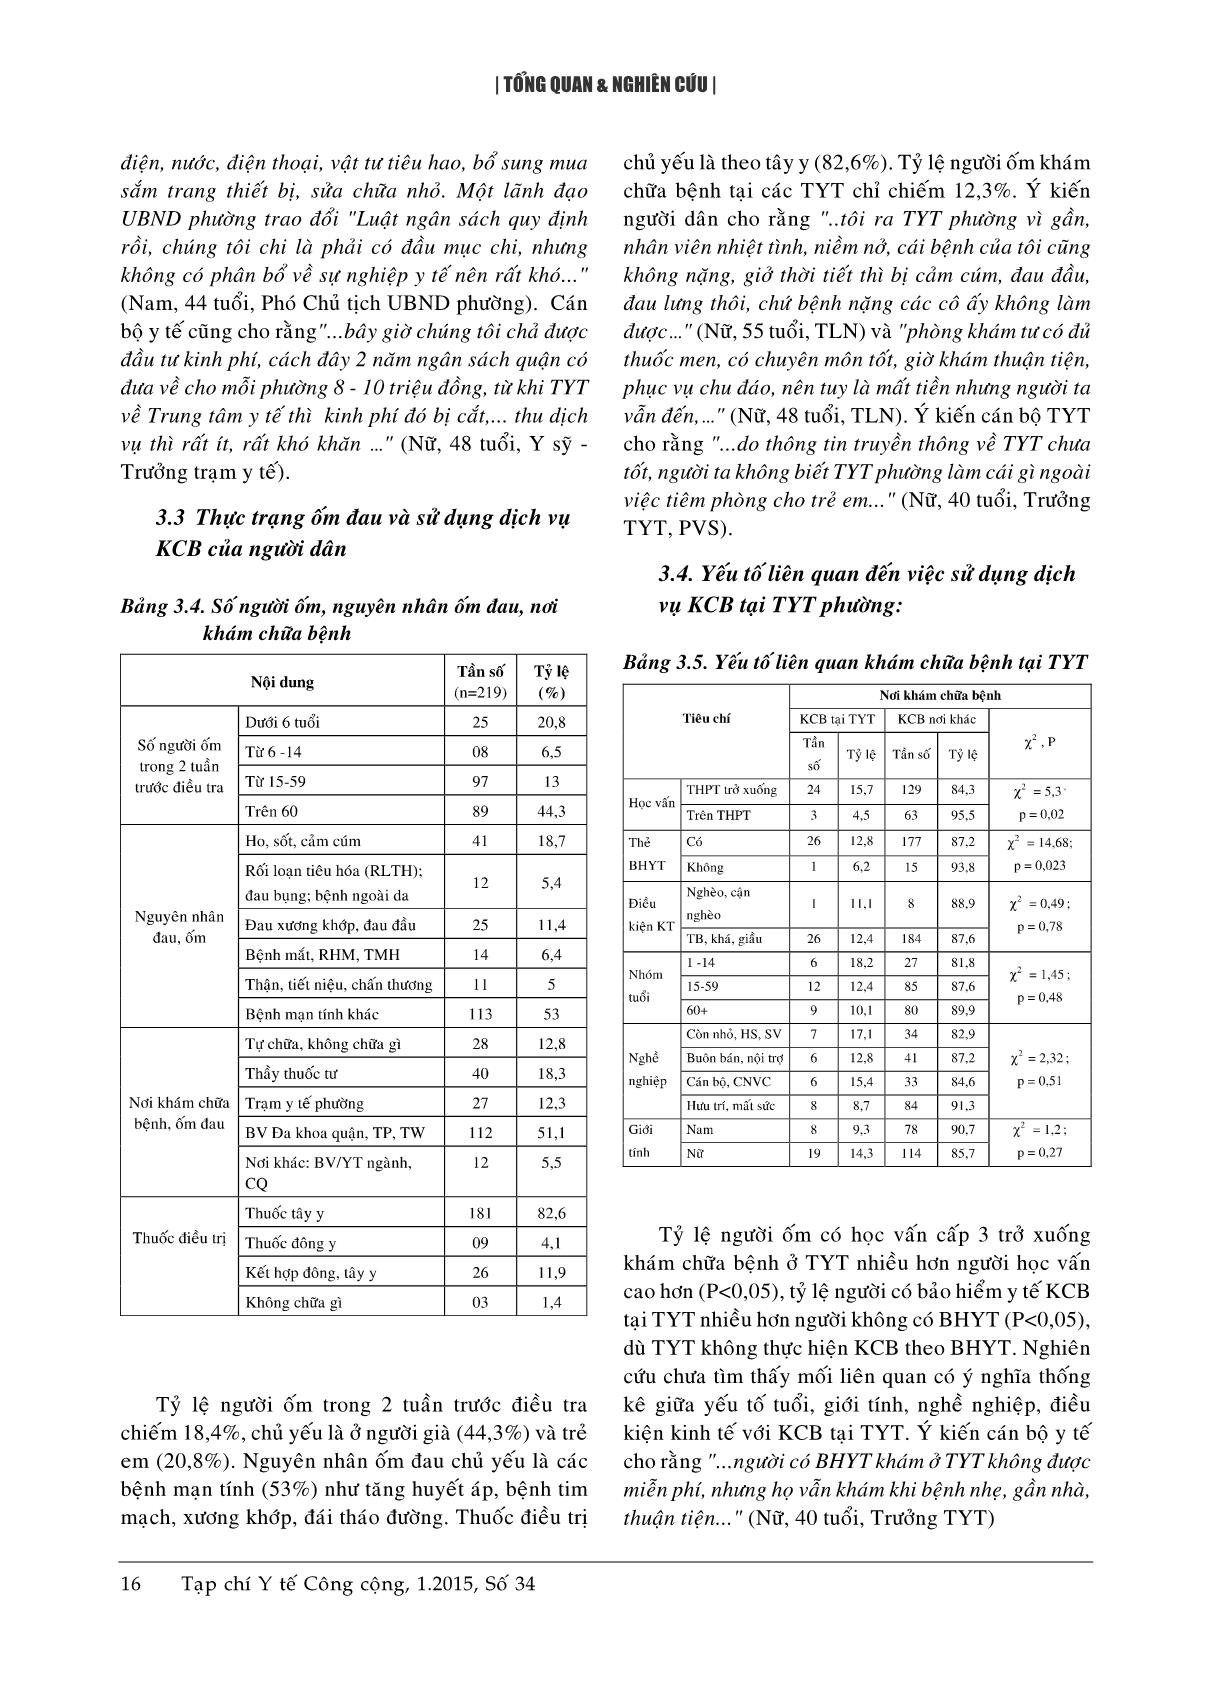 Thực trạng và một số yếu tố liên quan dịch vụ khám chữa bệnh tại các trạm y tế phường thuộc quận Ngô Quyền, Hải Phòng năm 2013 trang 5